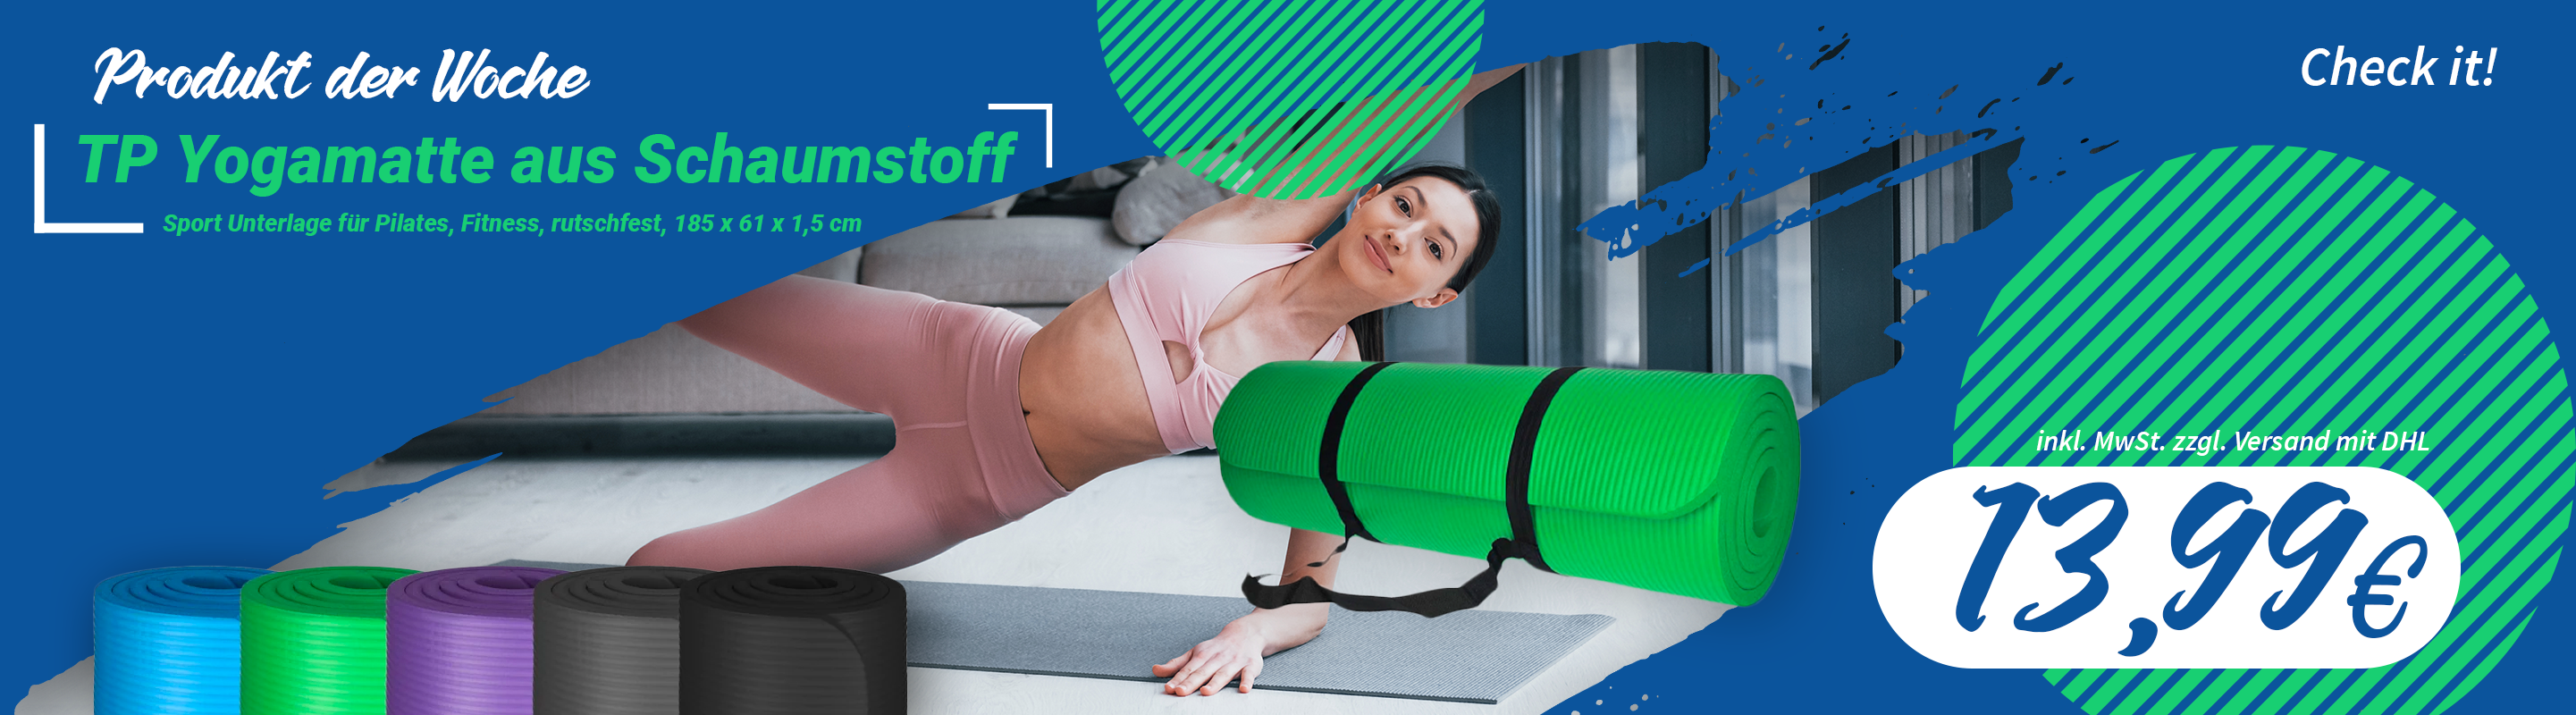 TP Yogamatte aus Schaumstoff - Produkt der Woche Banner